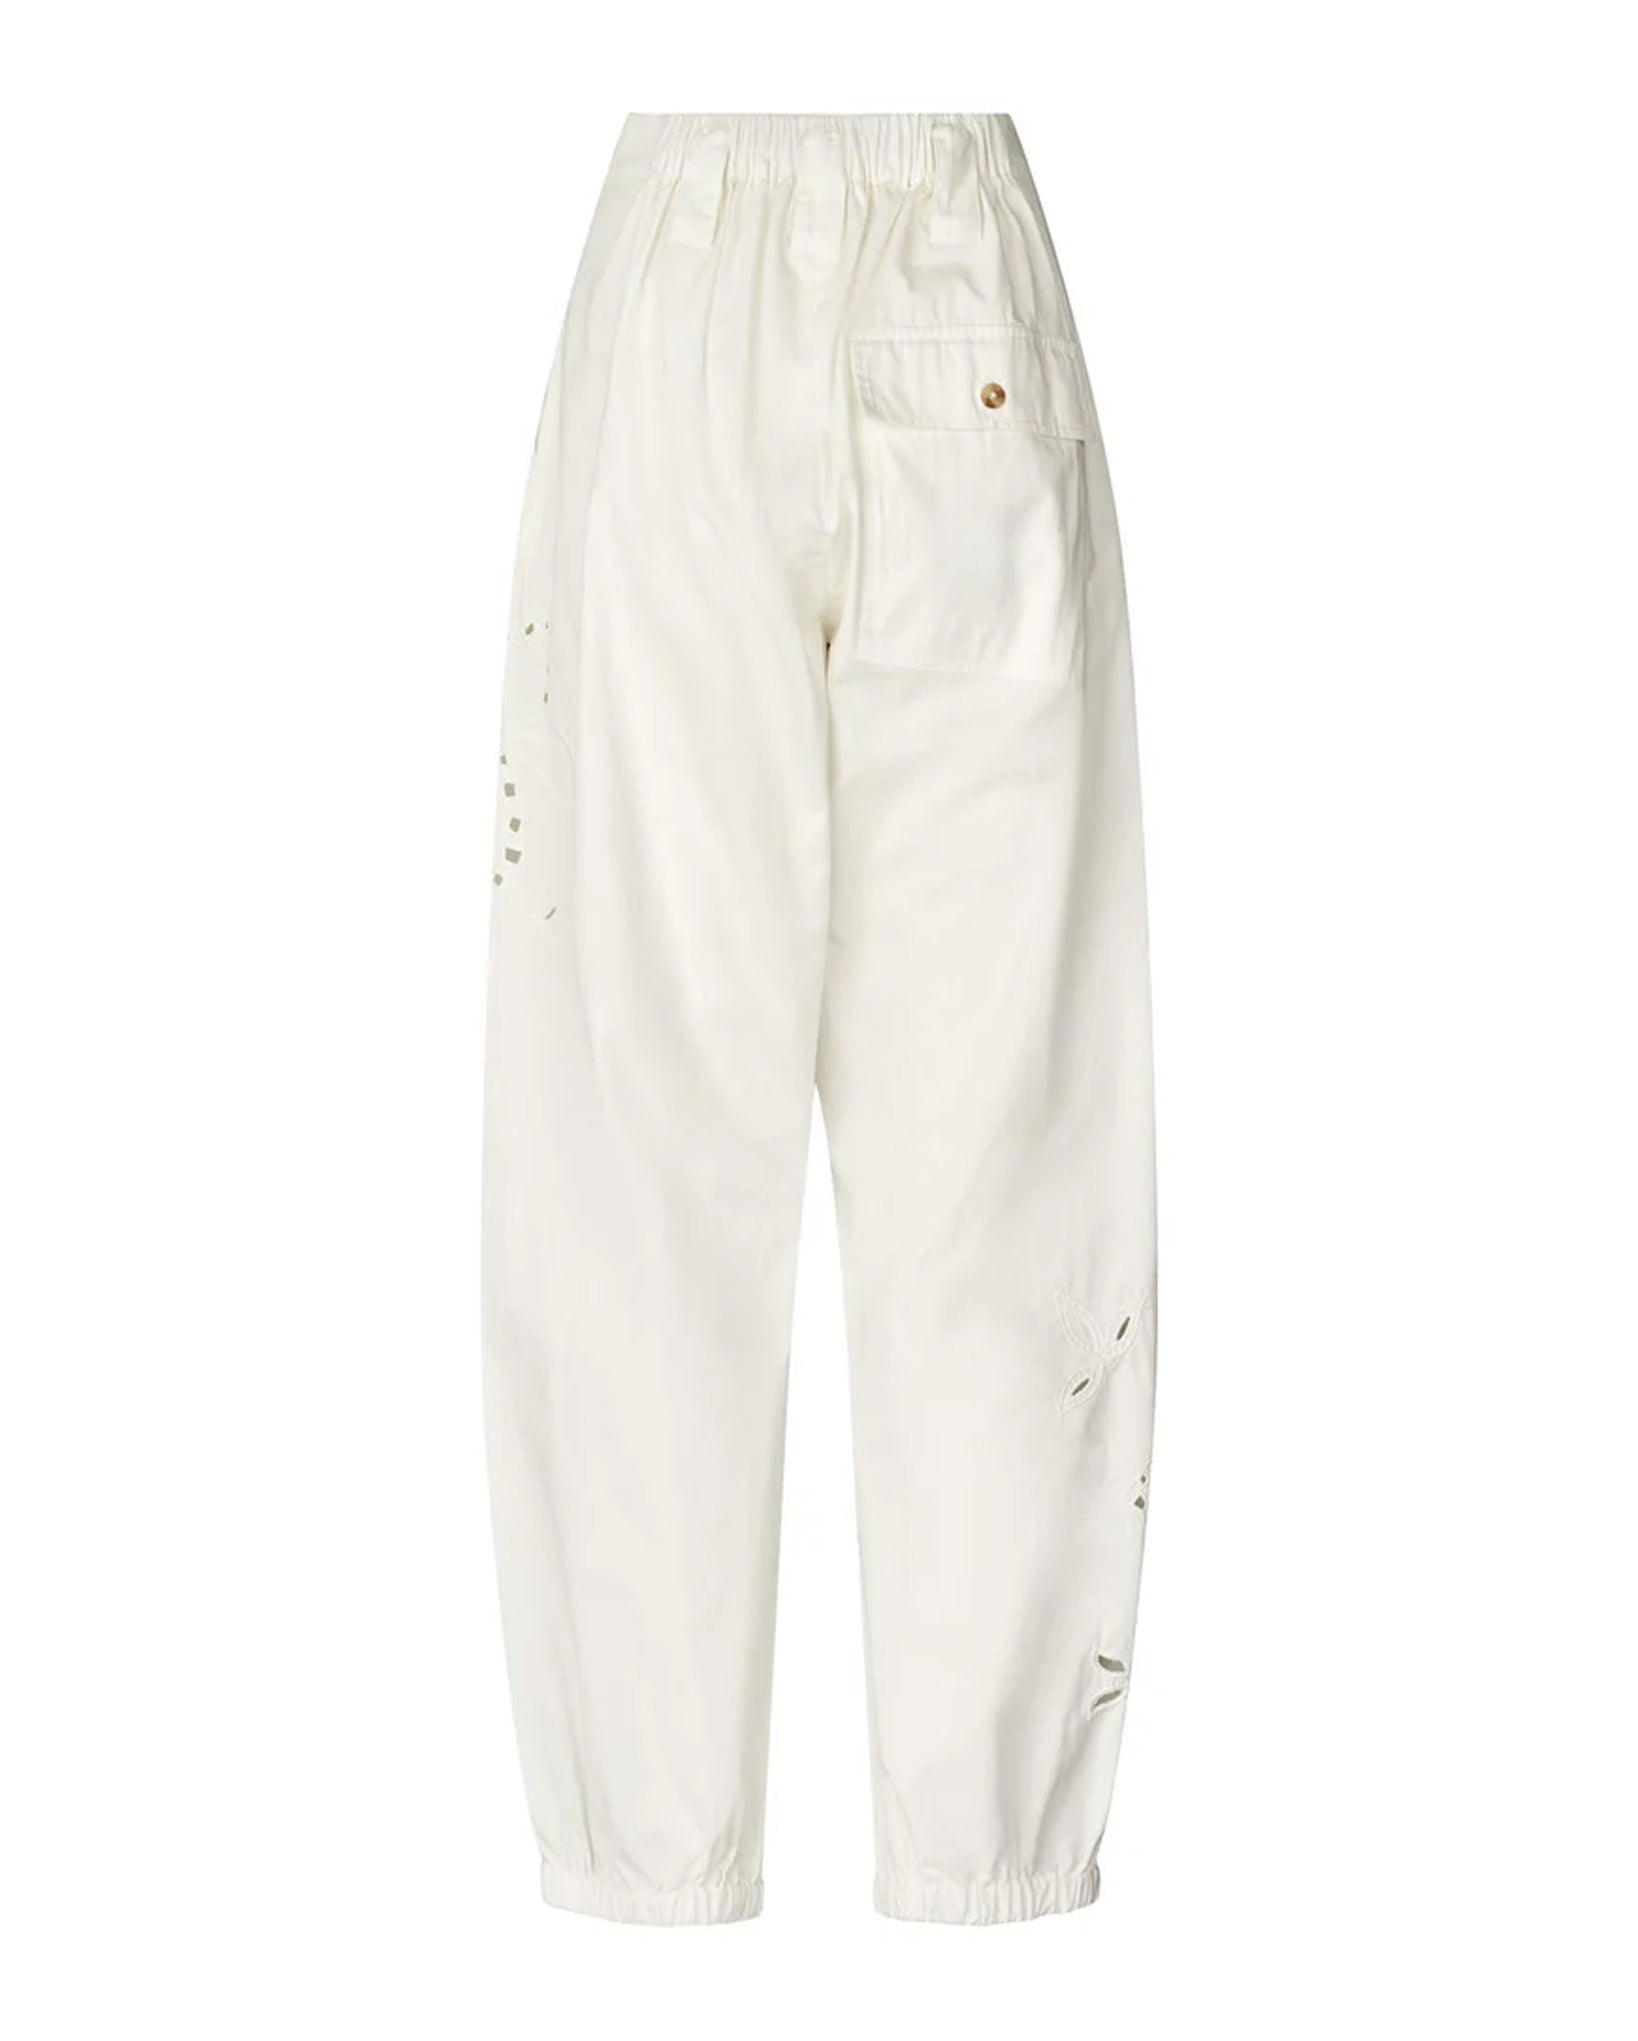 Iman Lotus Lace Pants (Off-White)